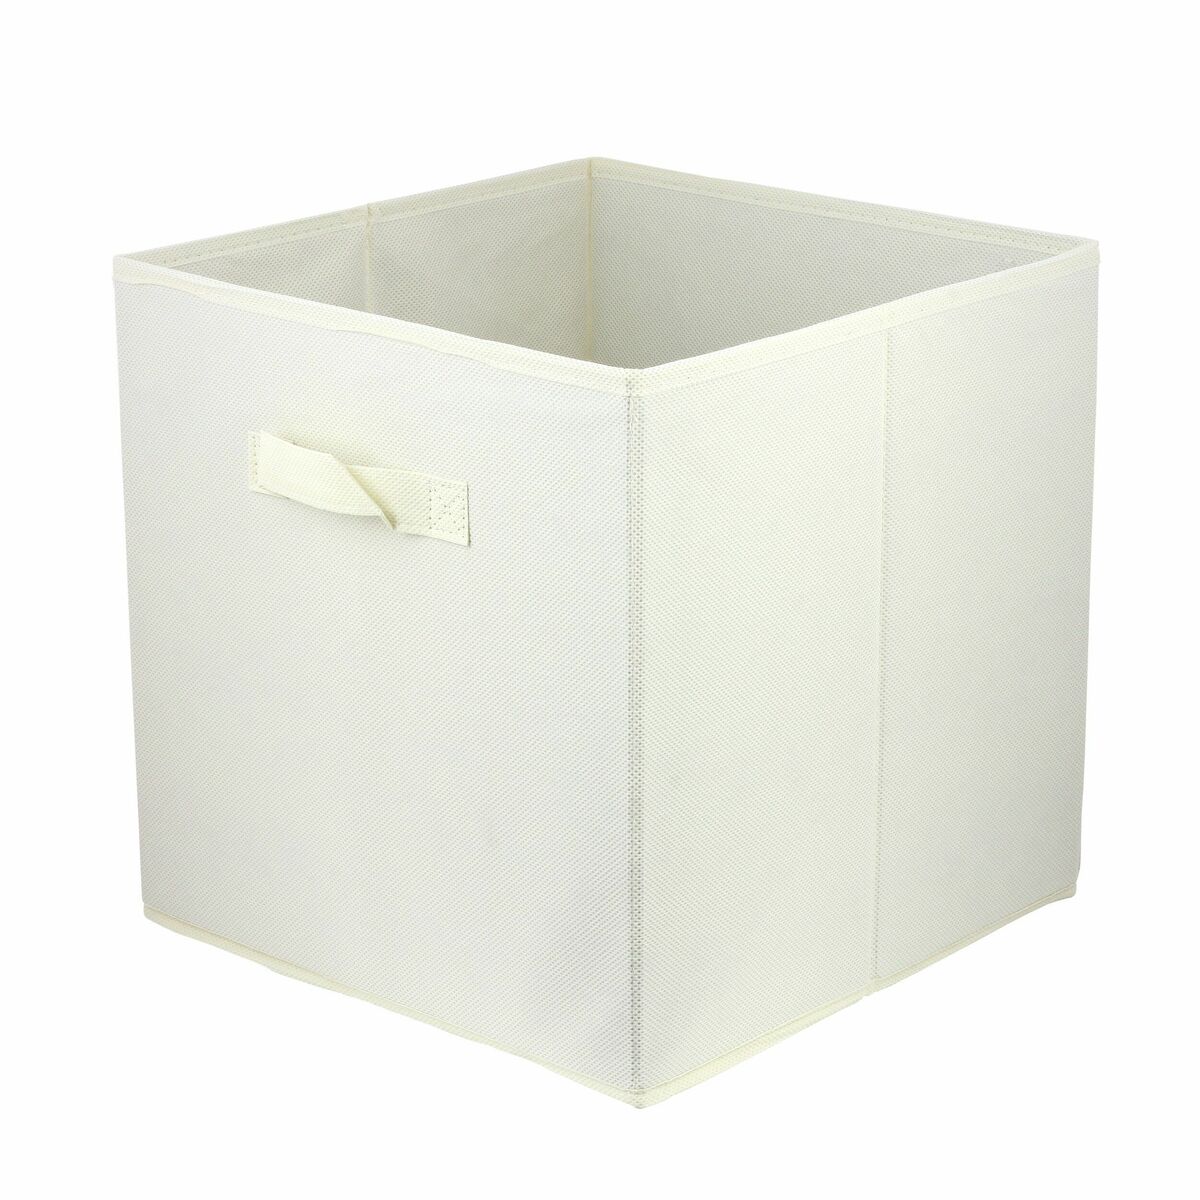 Pudełko tekstylne Kub 31 x 31 x 31 cm białe